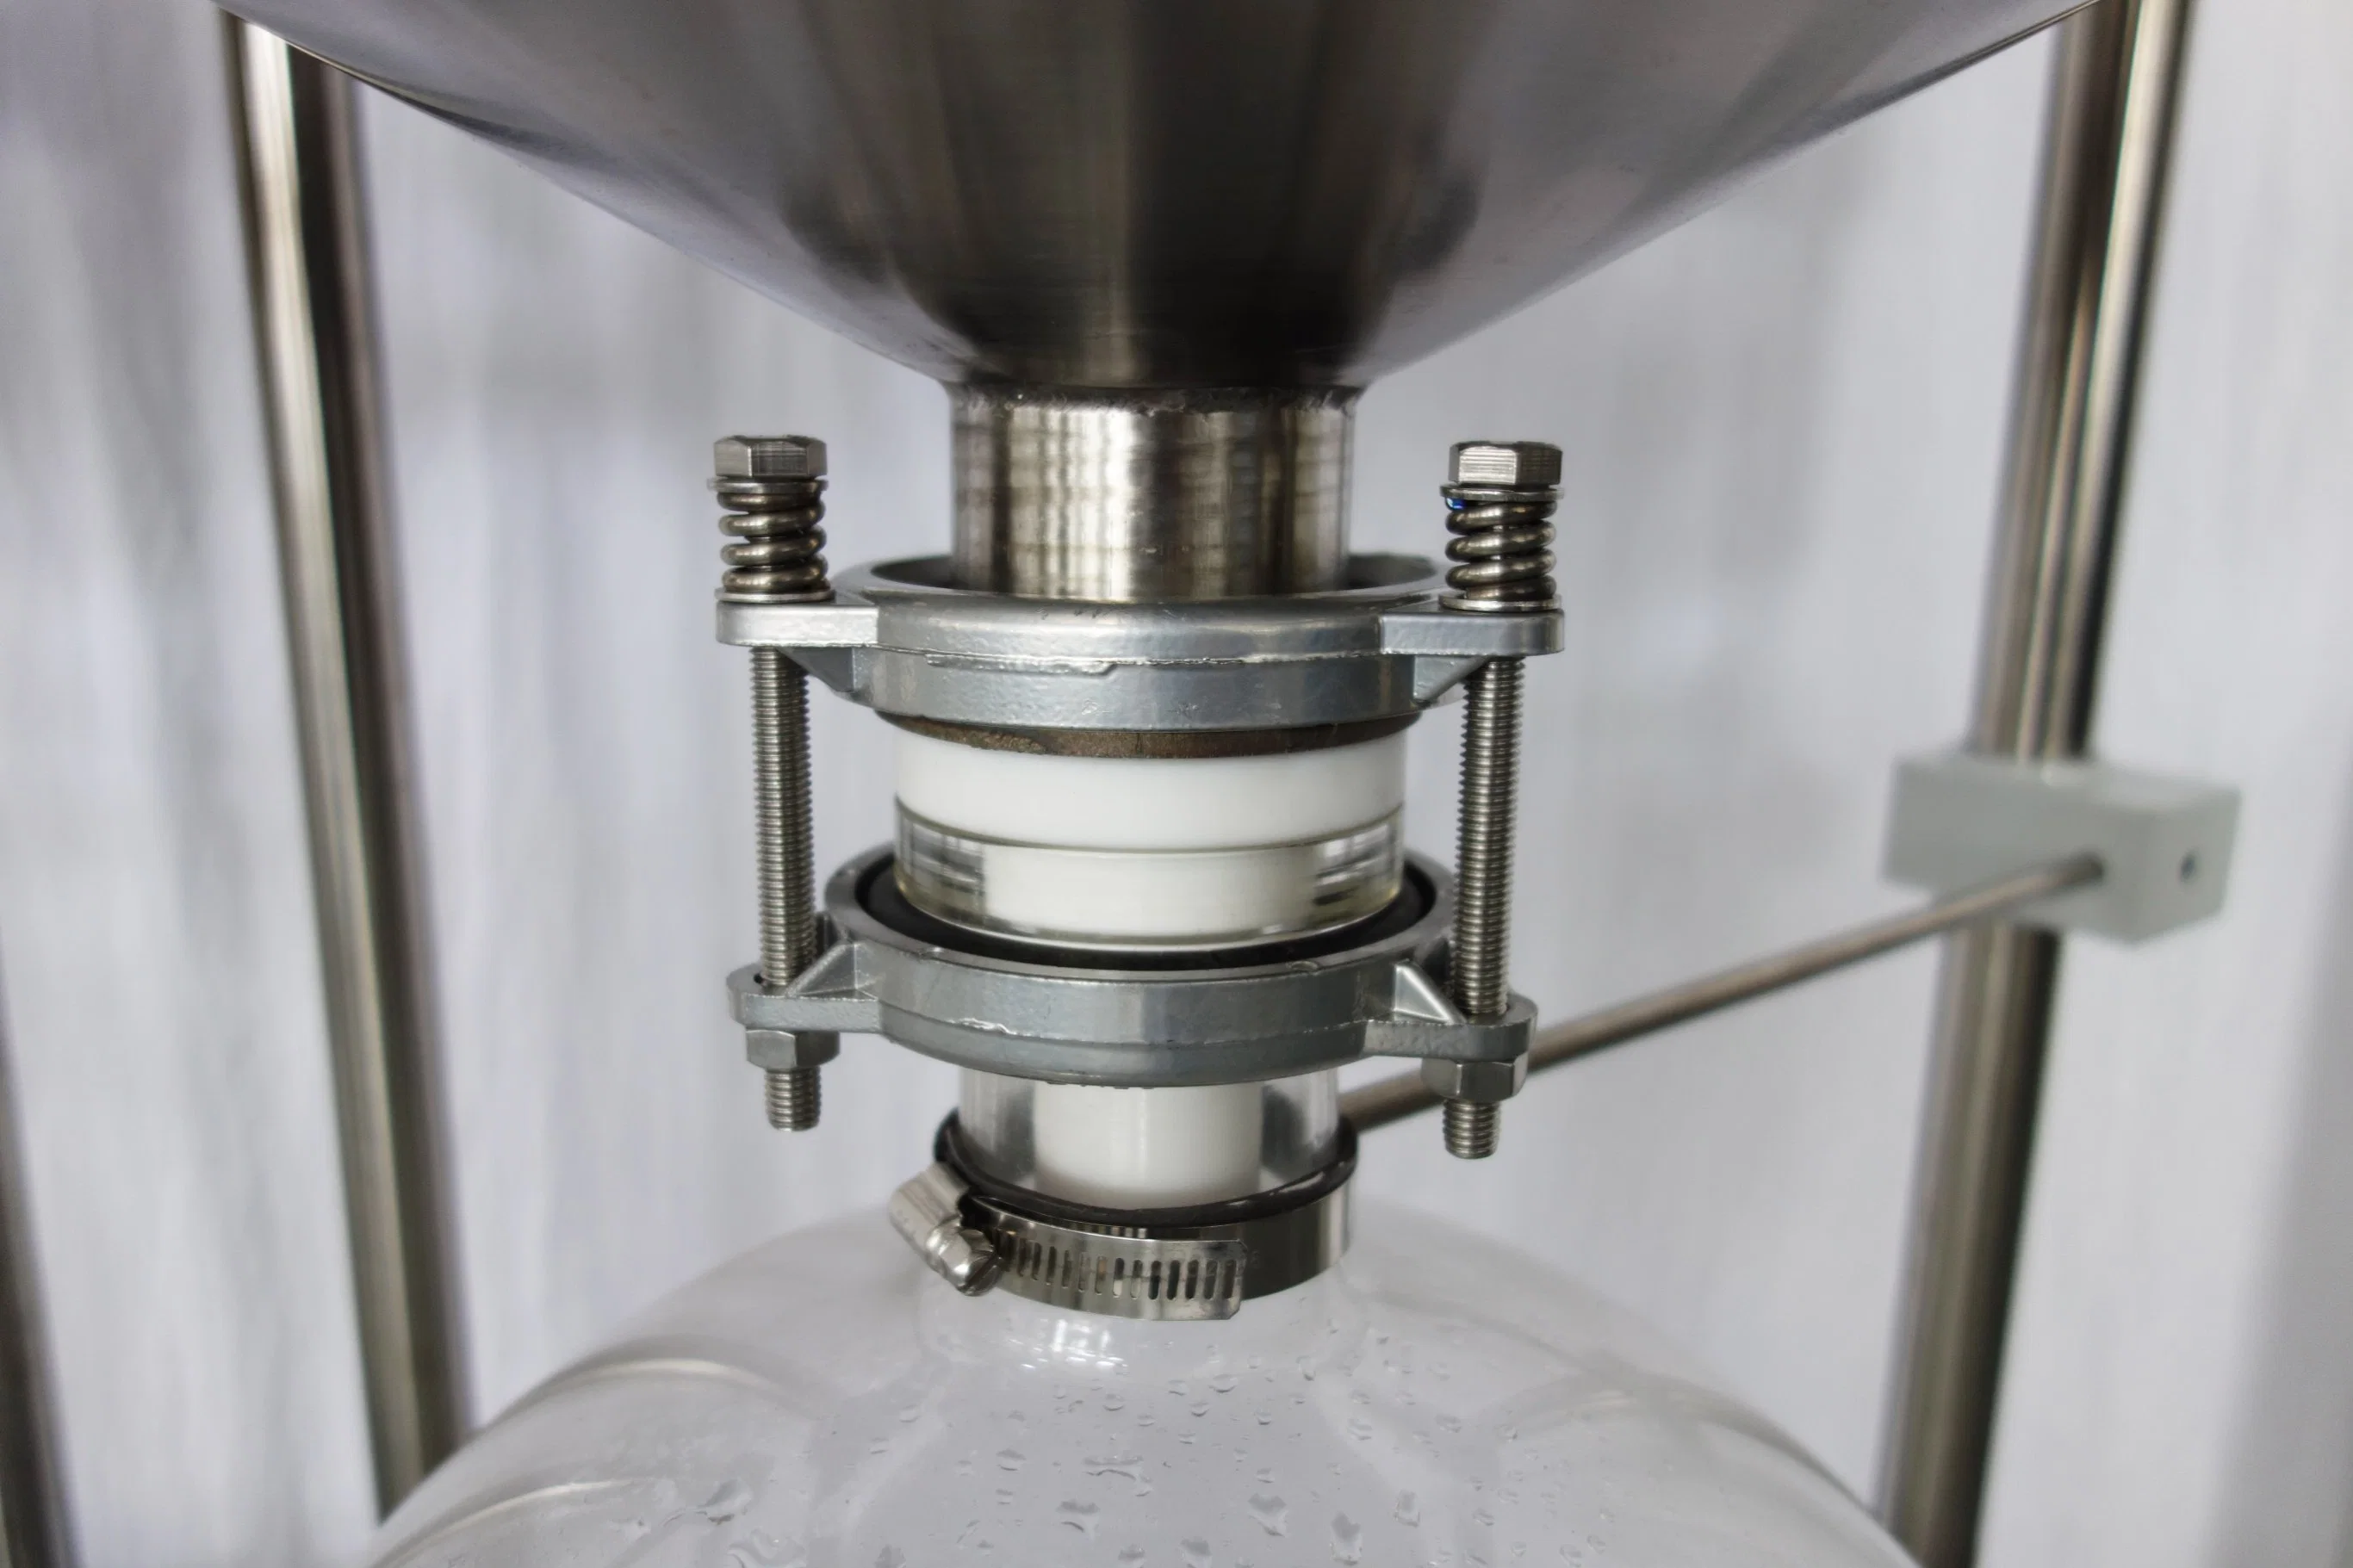 Système d'équipement de filtration par aspiration d'huile à vide Nutsche pour la winterisation en laboratoire